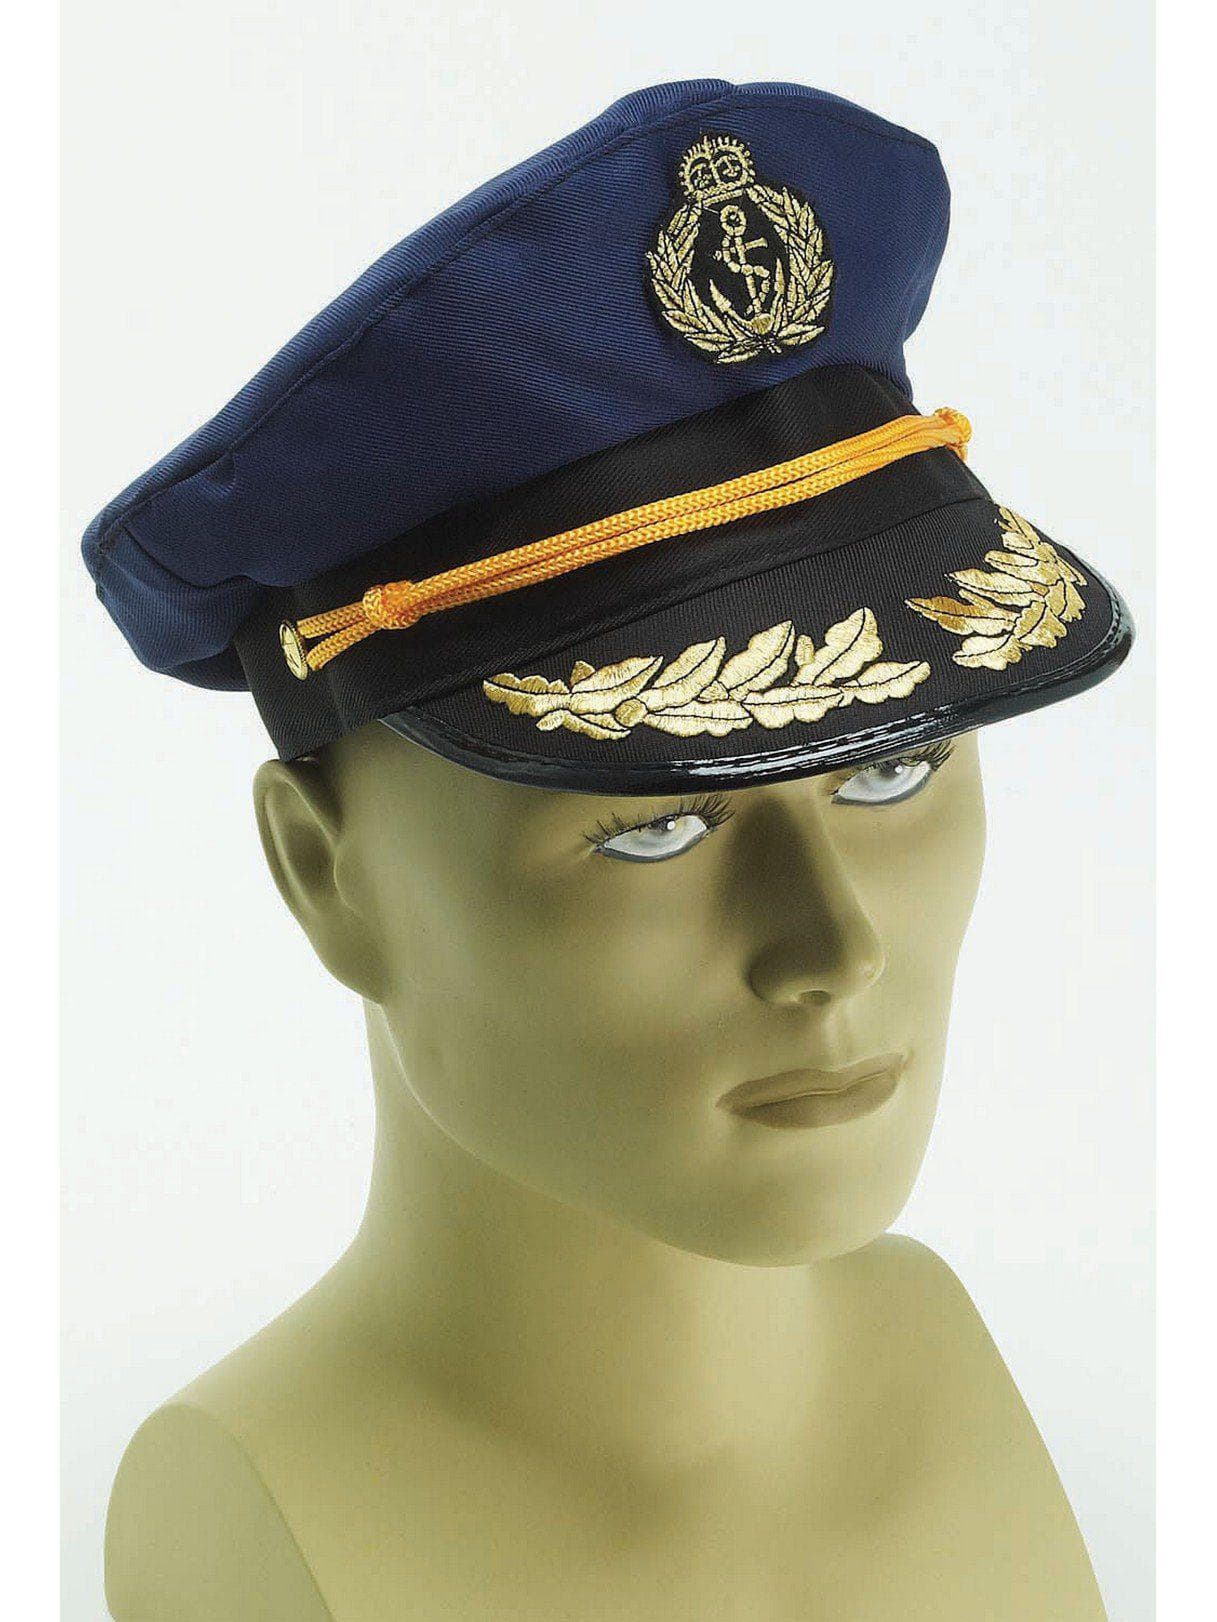 Adult Blue Navy Captain Hat - costumes.com